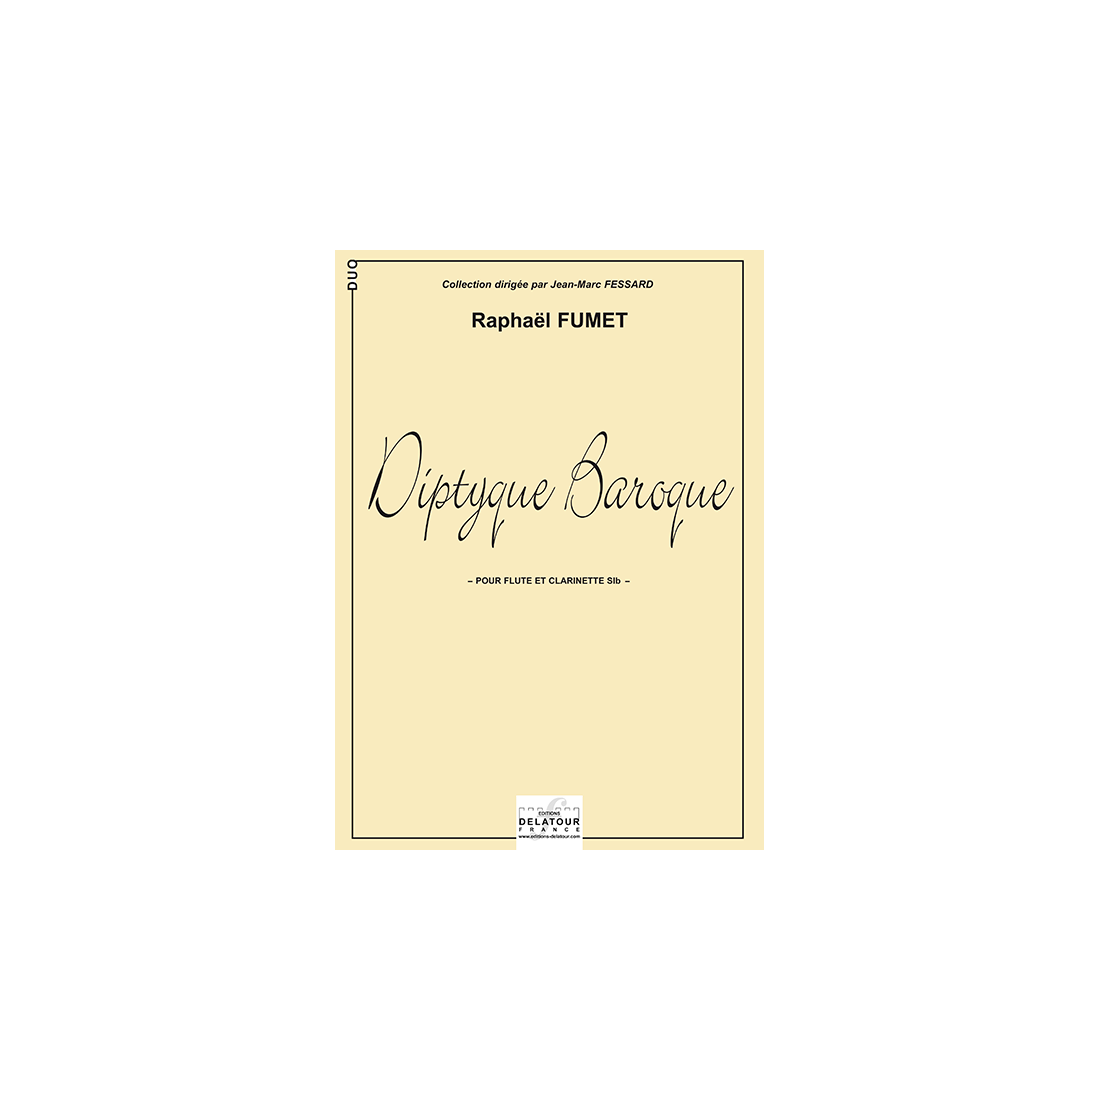 Diptyque baroque für Flöte und B-Klarinette